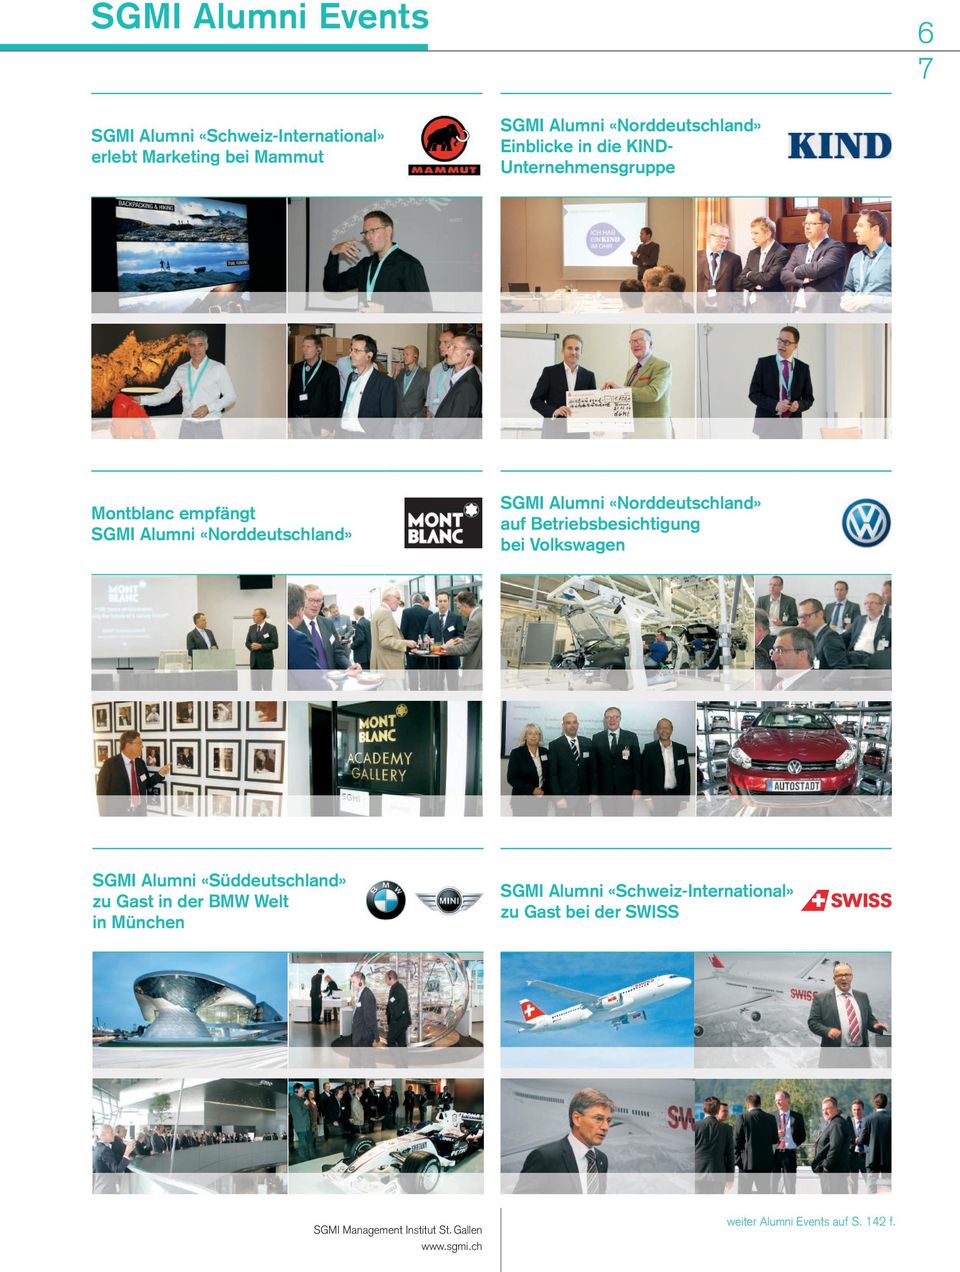 auf Betriebsbesichtigung bei Volkswagen SGMI Alumni «Süddeutschland» zu Gast in der BMW Welt in München SGMI Alumni